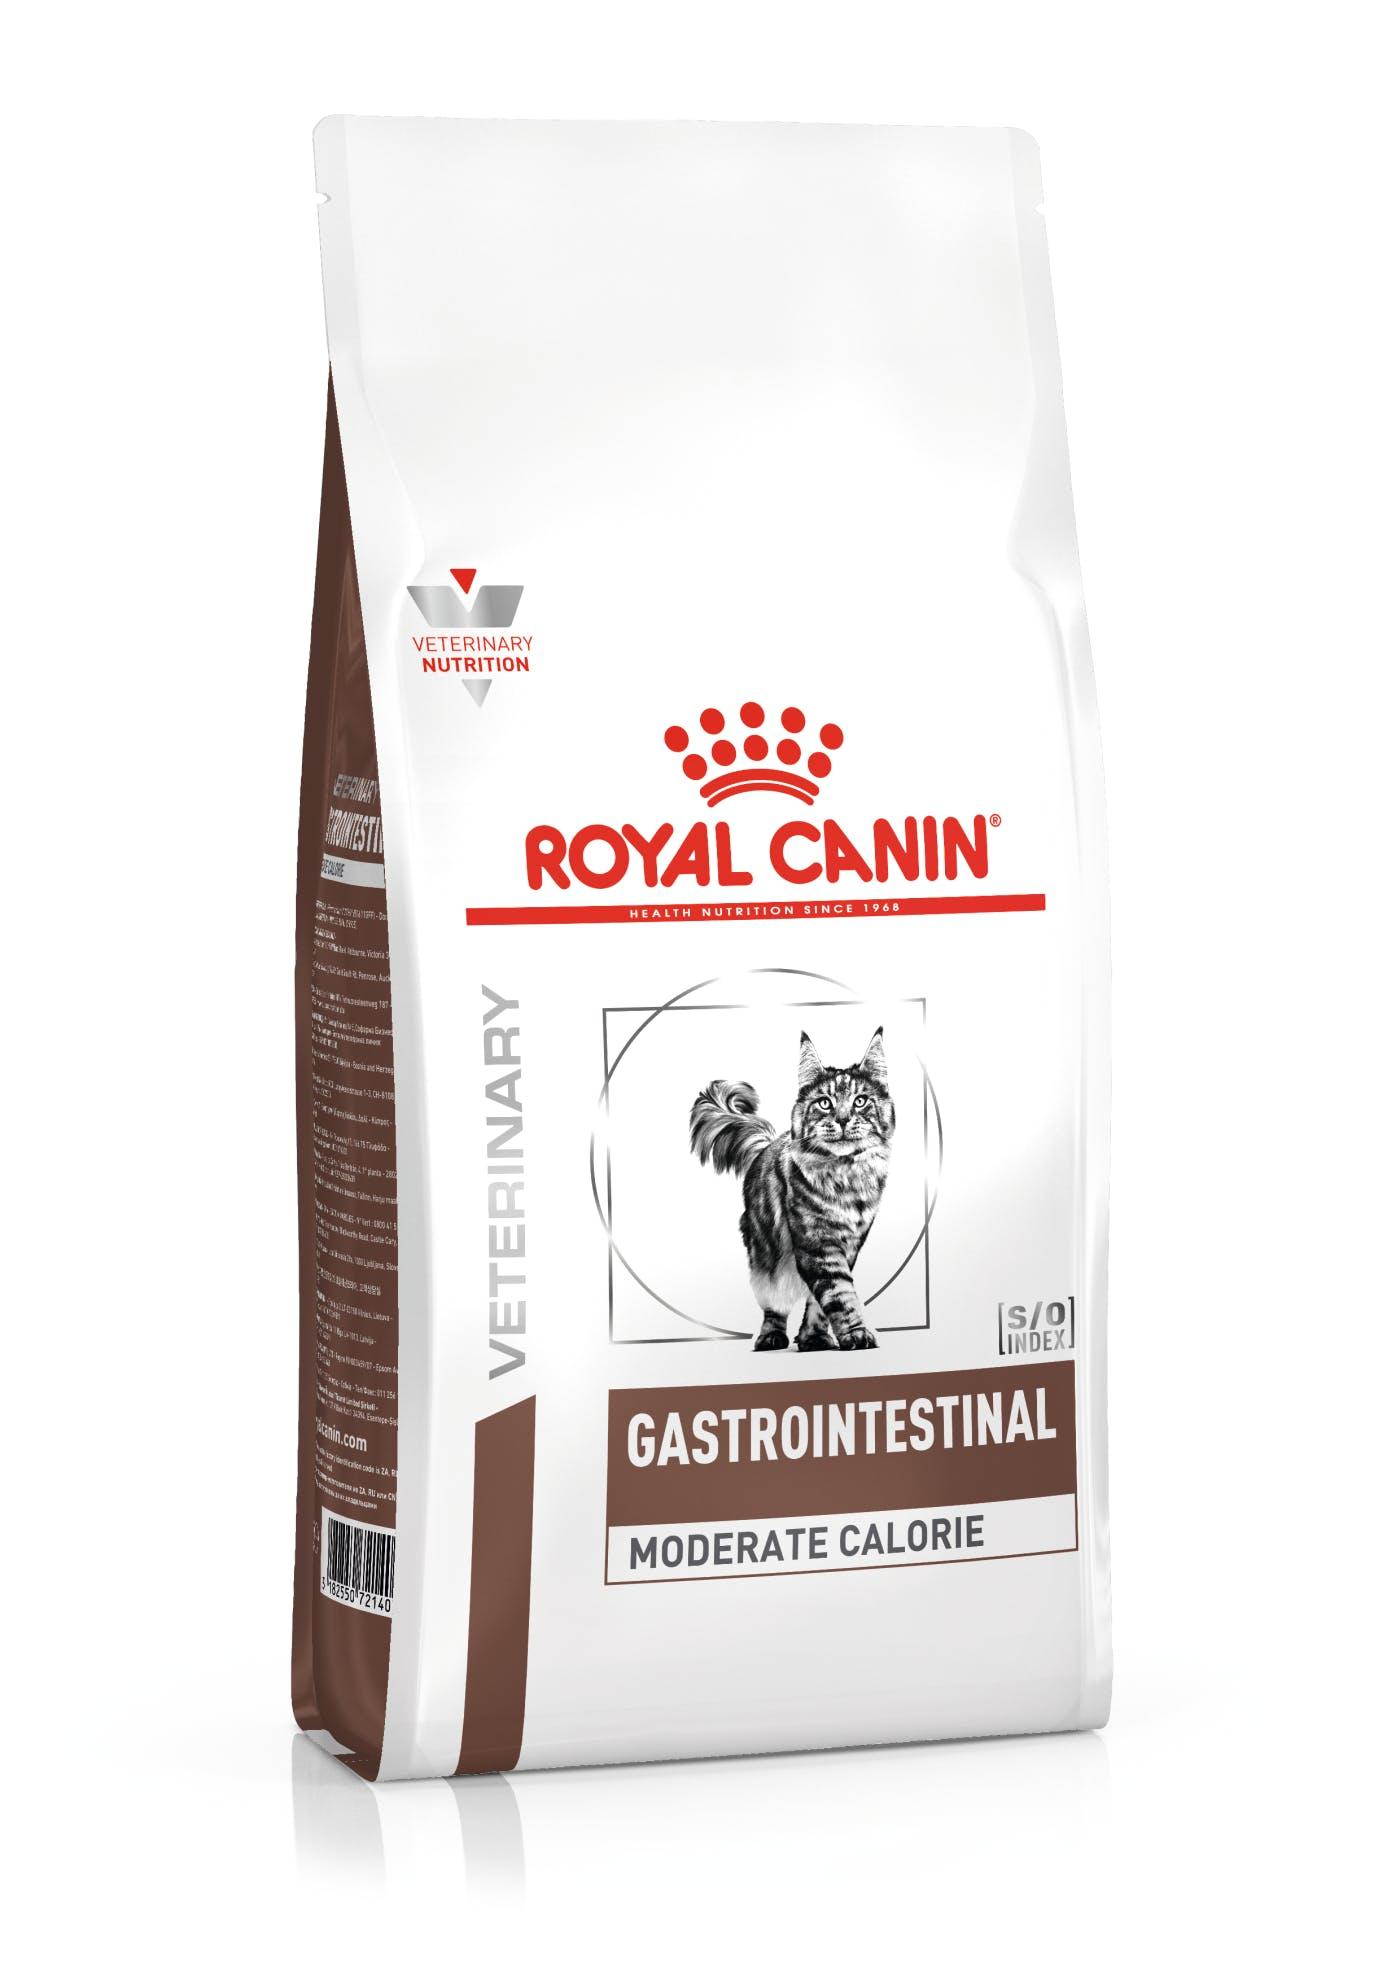 ROYAL CANIN Veterinarska dijeta za mačke Gastrointestinal Moderate Calorie 2kg